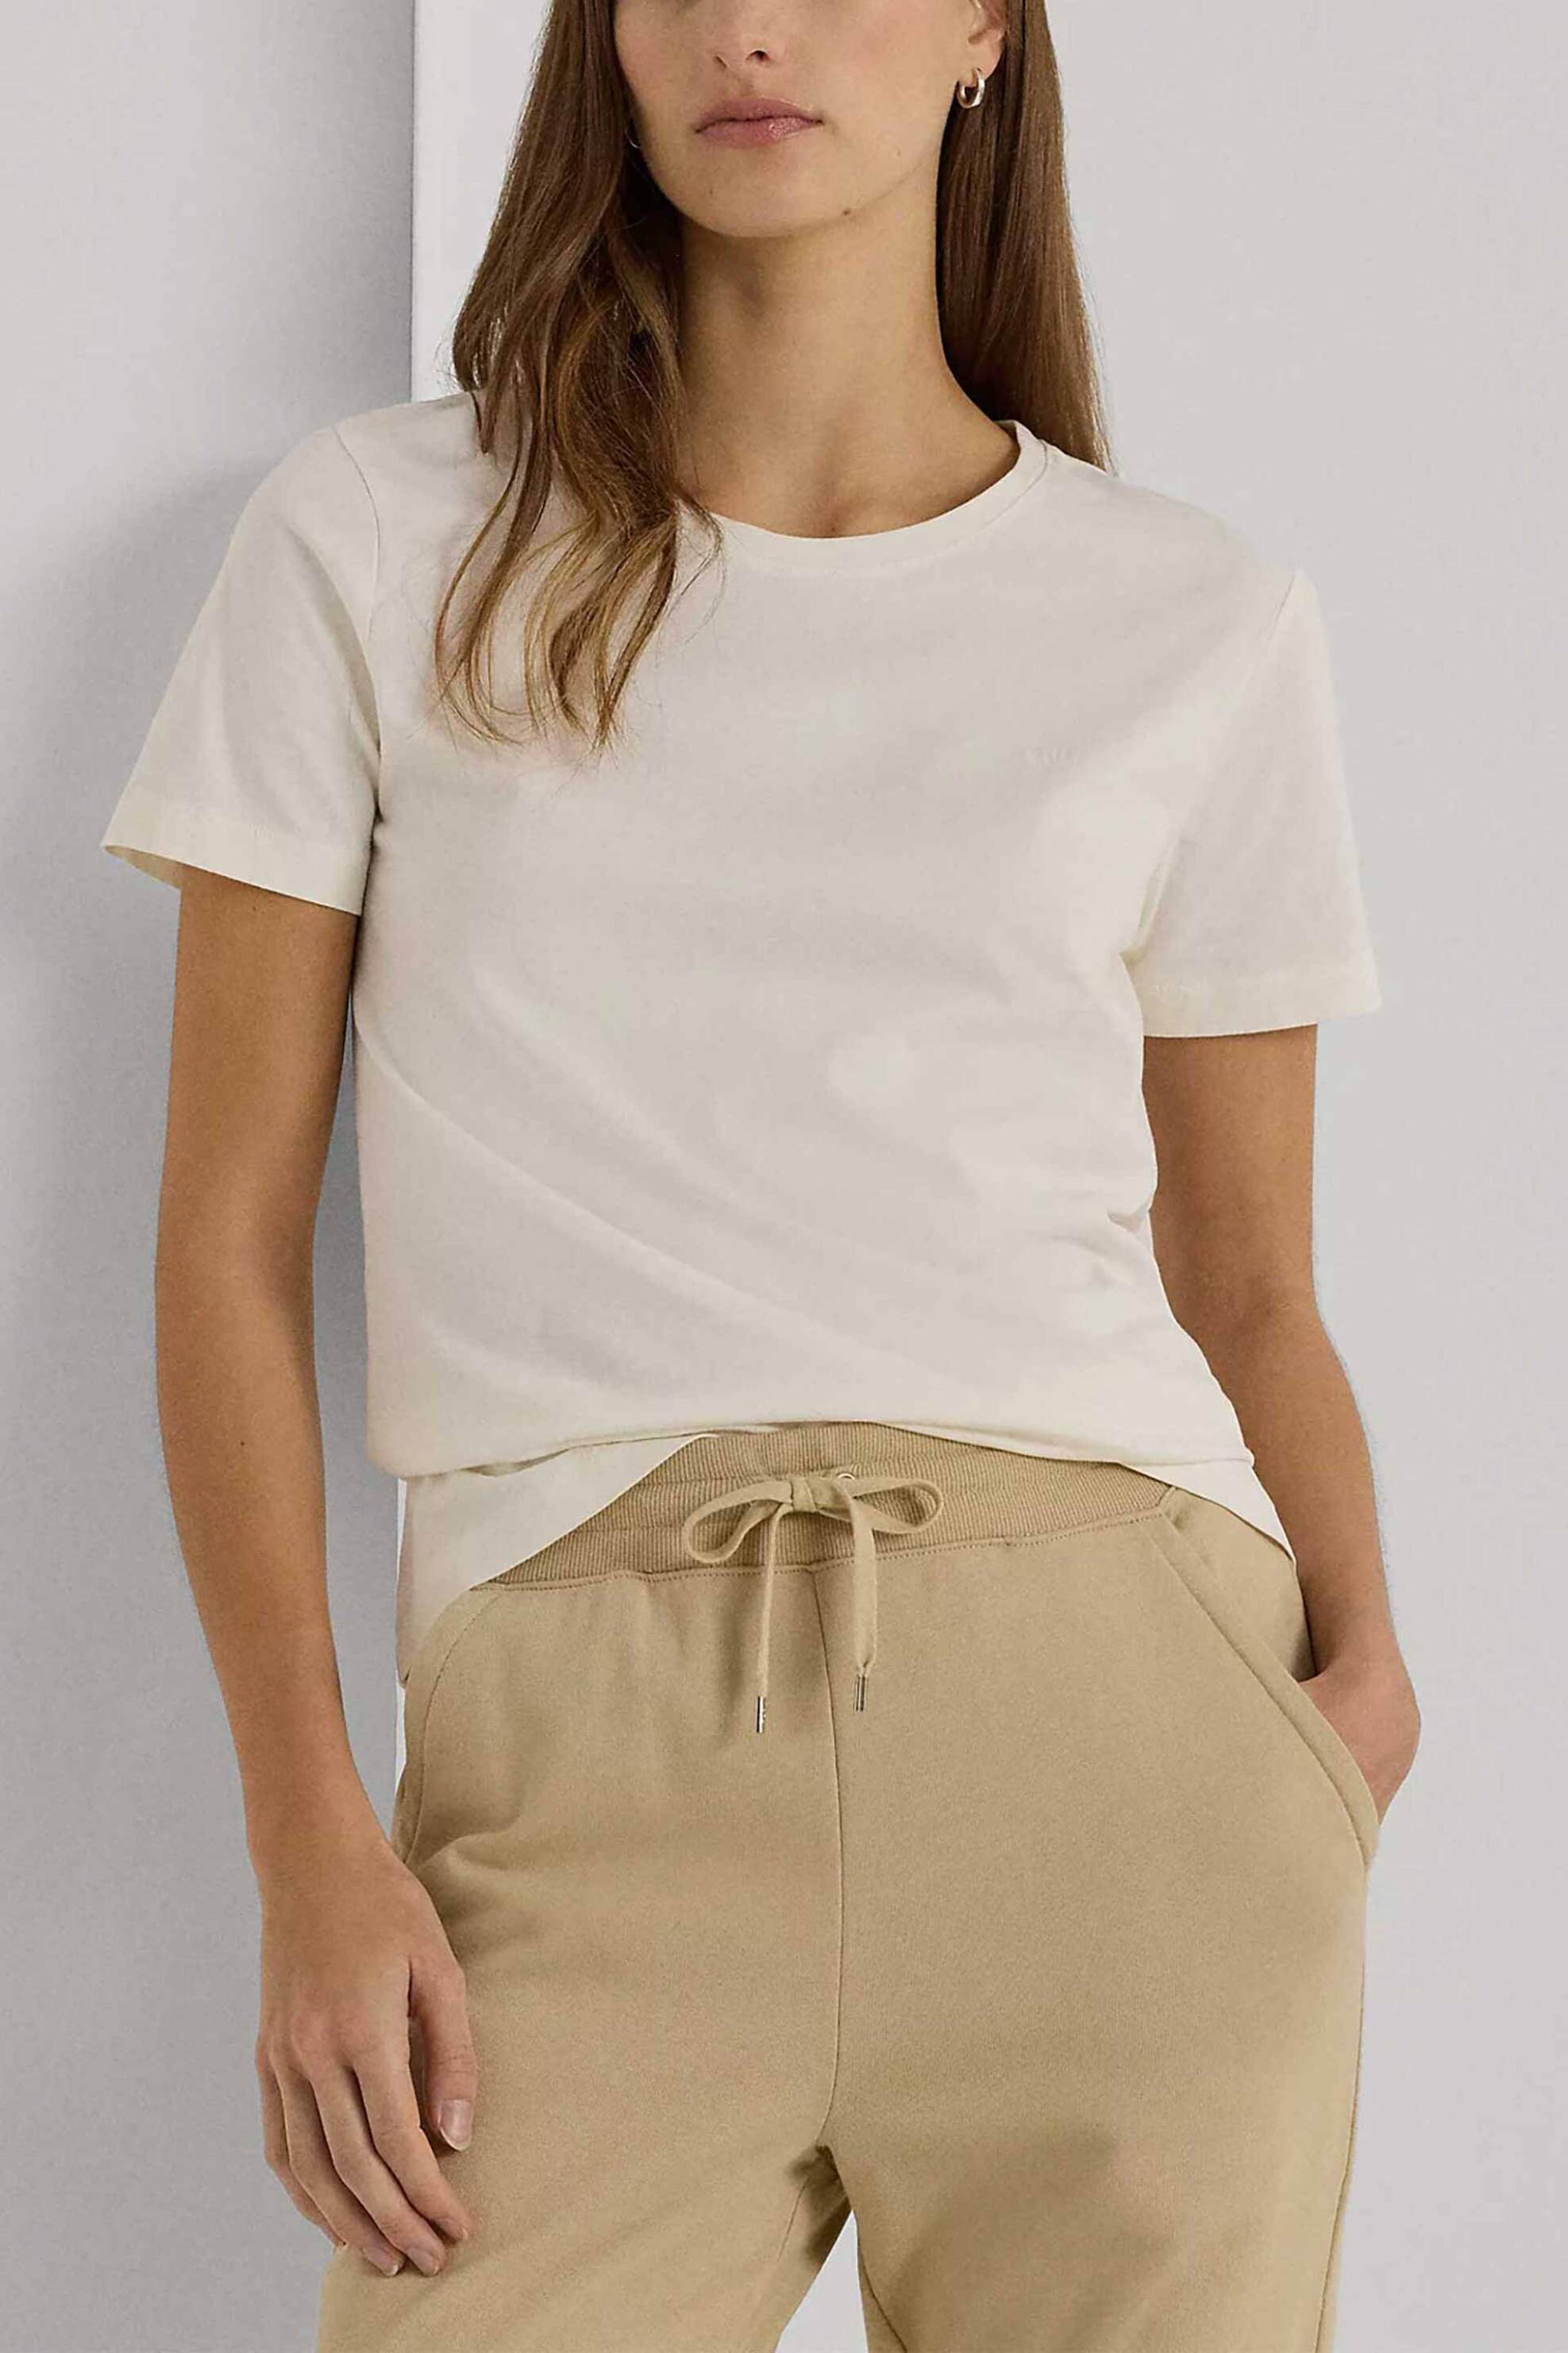 Γυναικεία Ρούχα & Αξεσουάρ > Γυναικεία Ρούχα > Γυναικεία Τοπ > Γυναικεία T-Shirts Lauren Ralph Lauren γυναικείο T-shirt μονόχρωμο με κεντημένο μονόγραμμα - 200931911001 Κρέμ